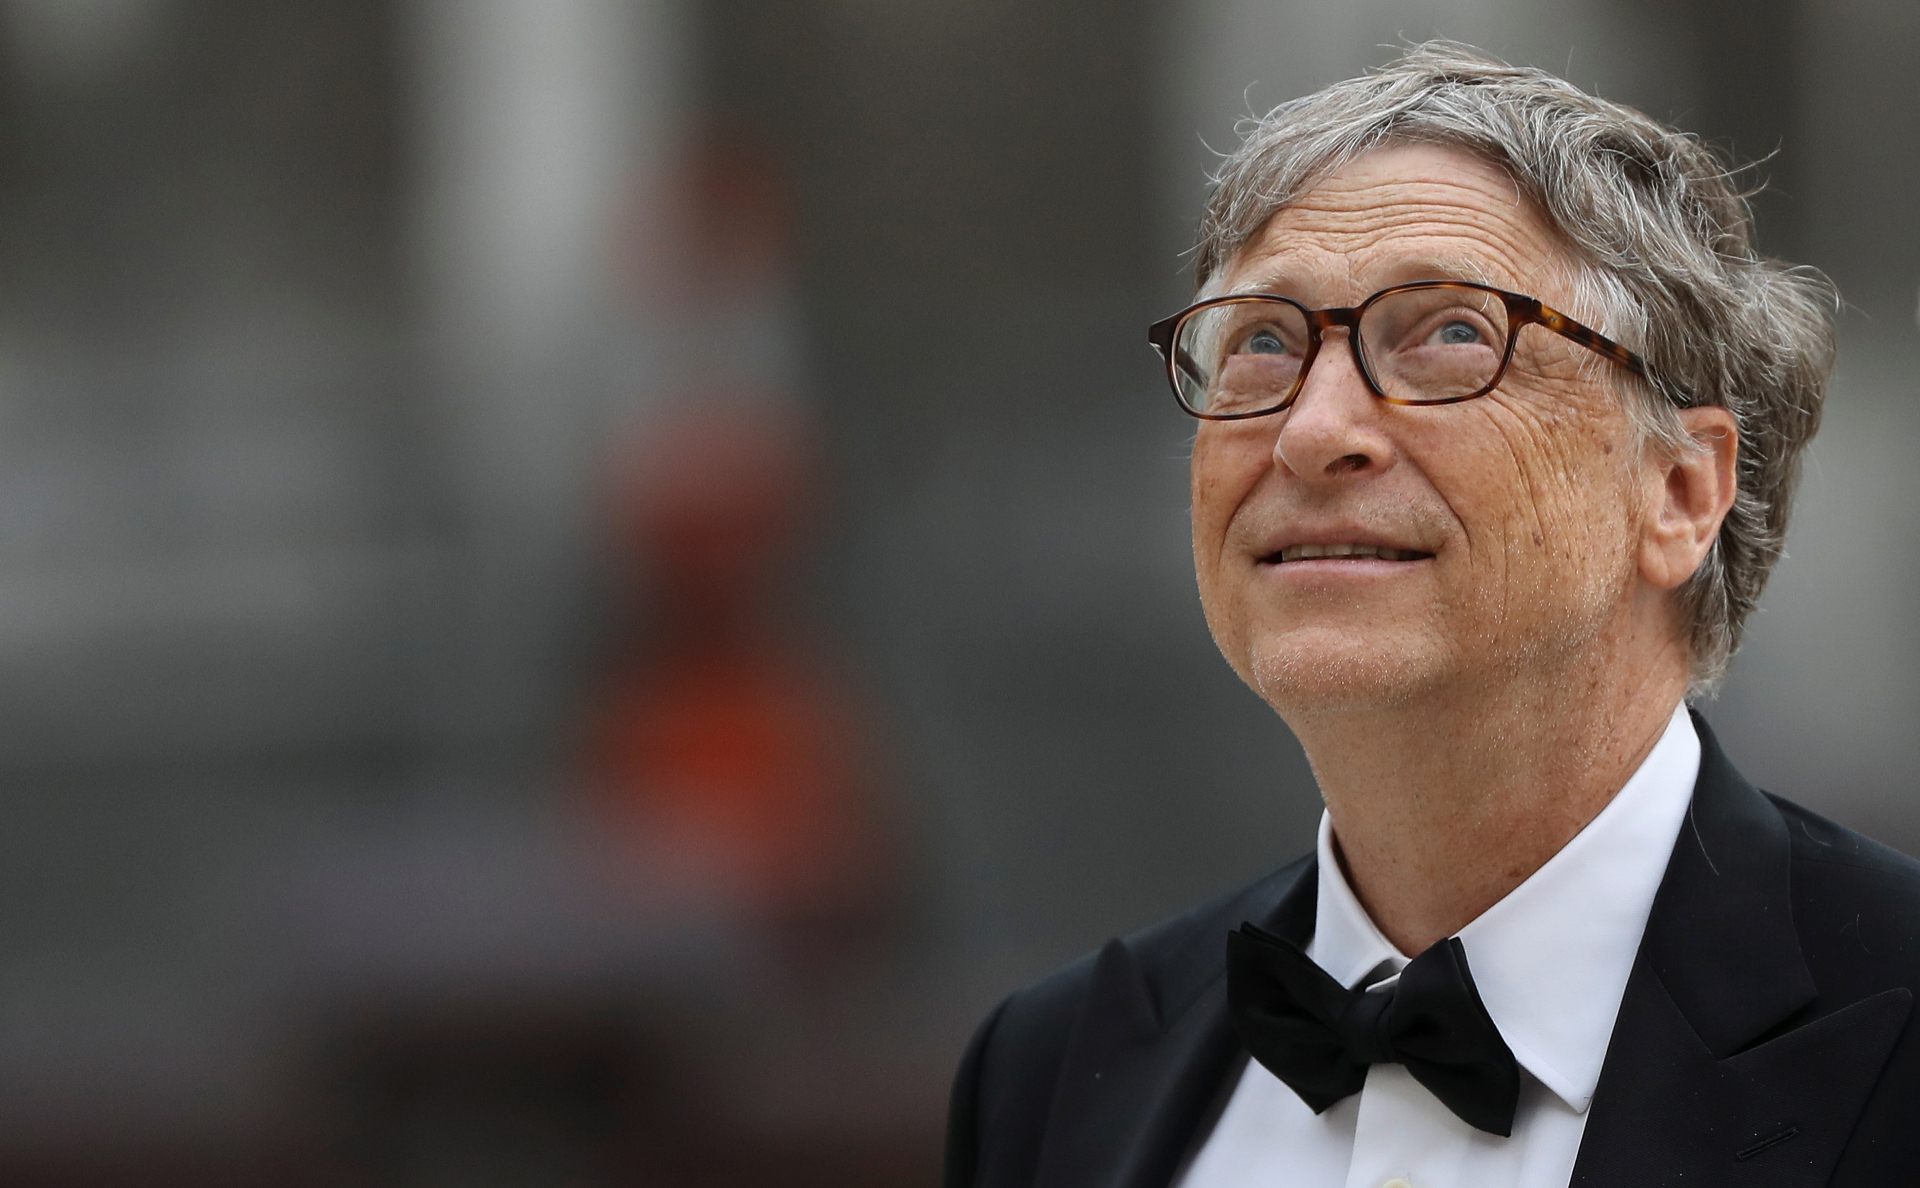 Американский предприниматель, мультимиллиардер, основатель корпорации Microsoft Билл Гейтс